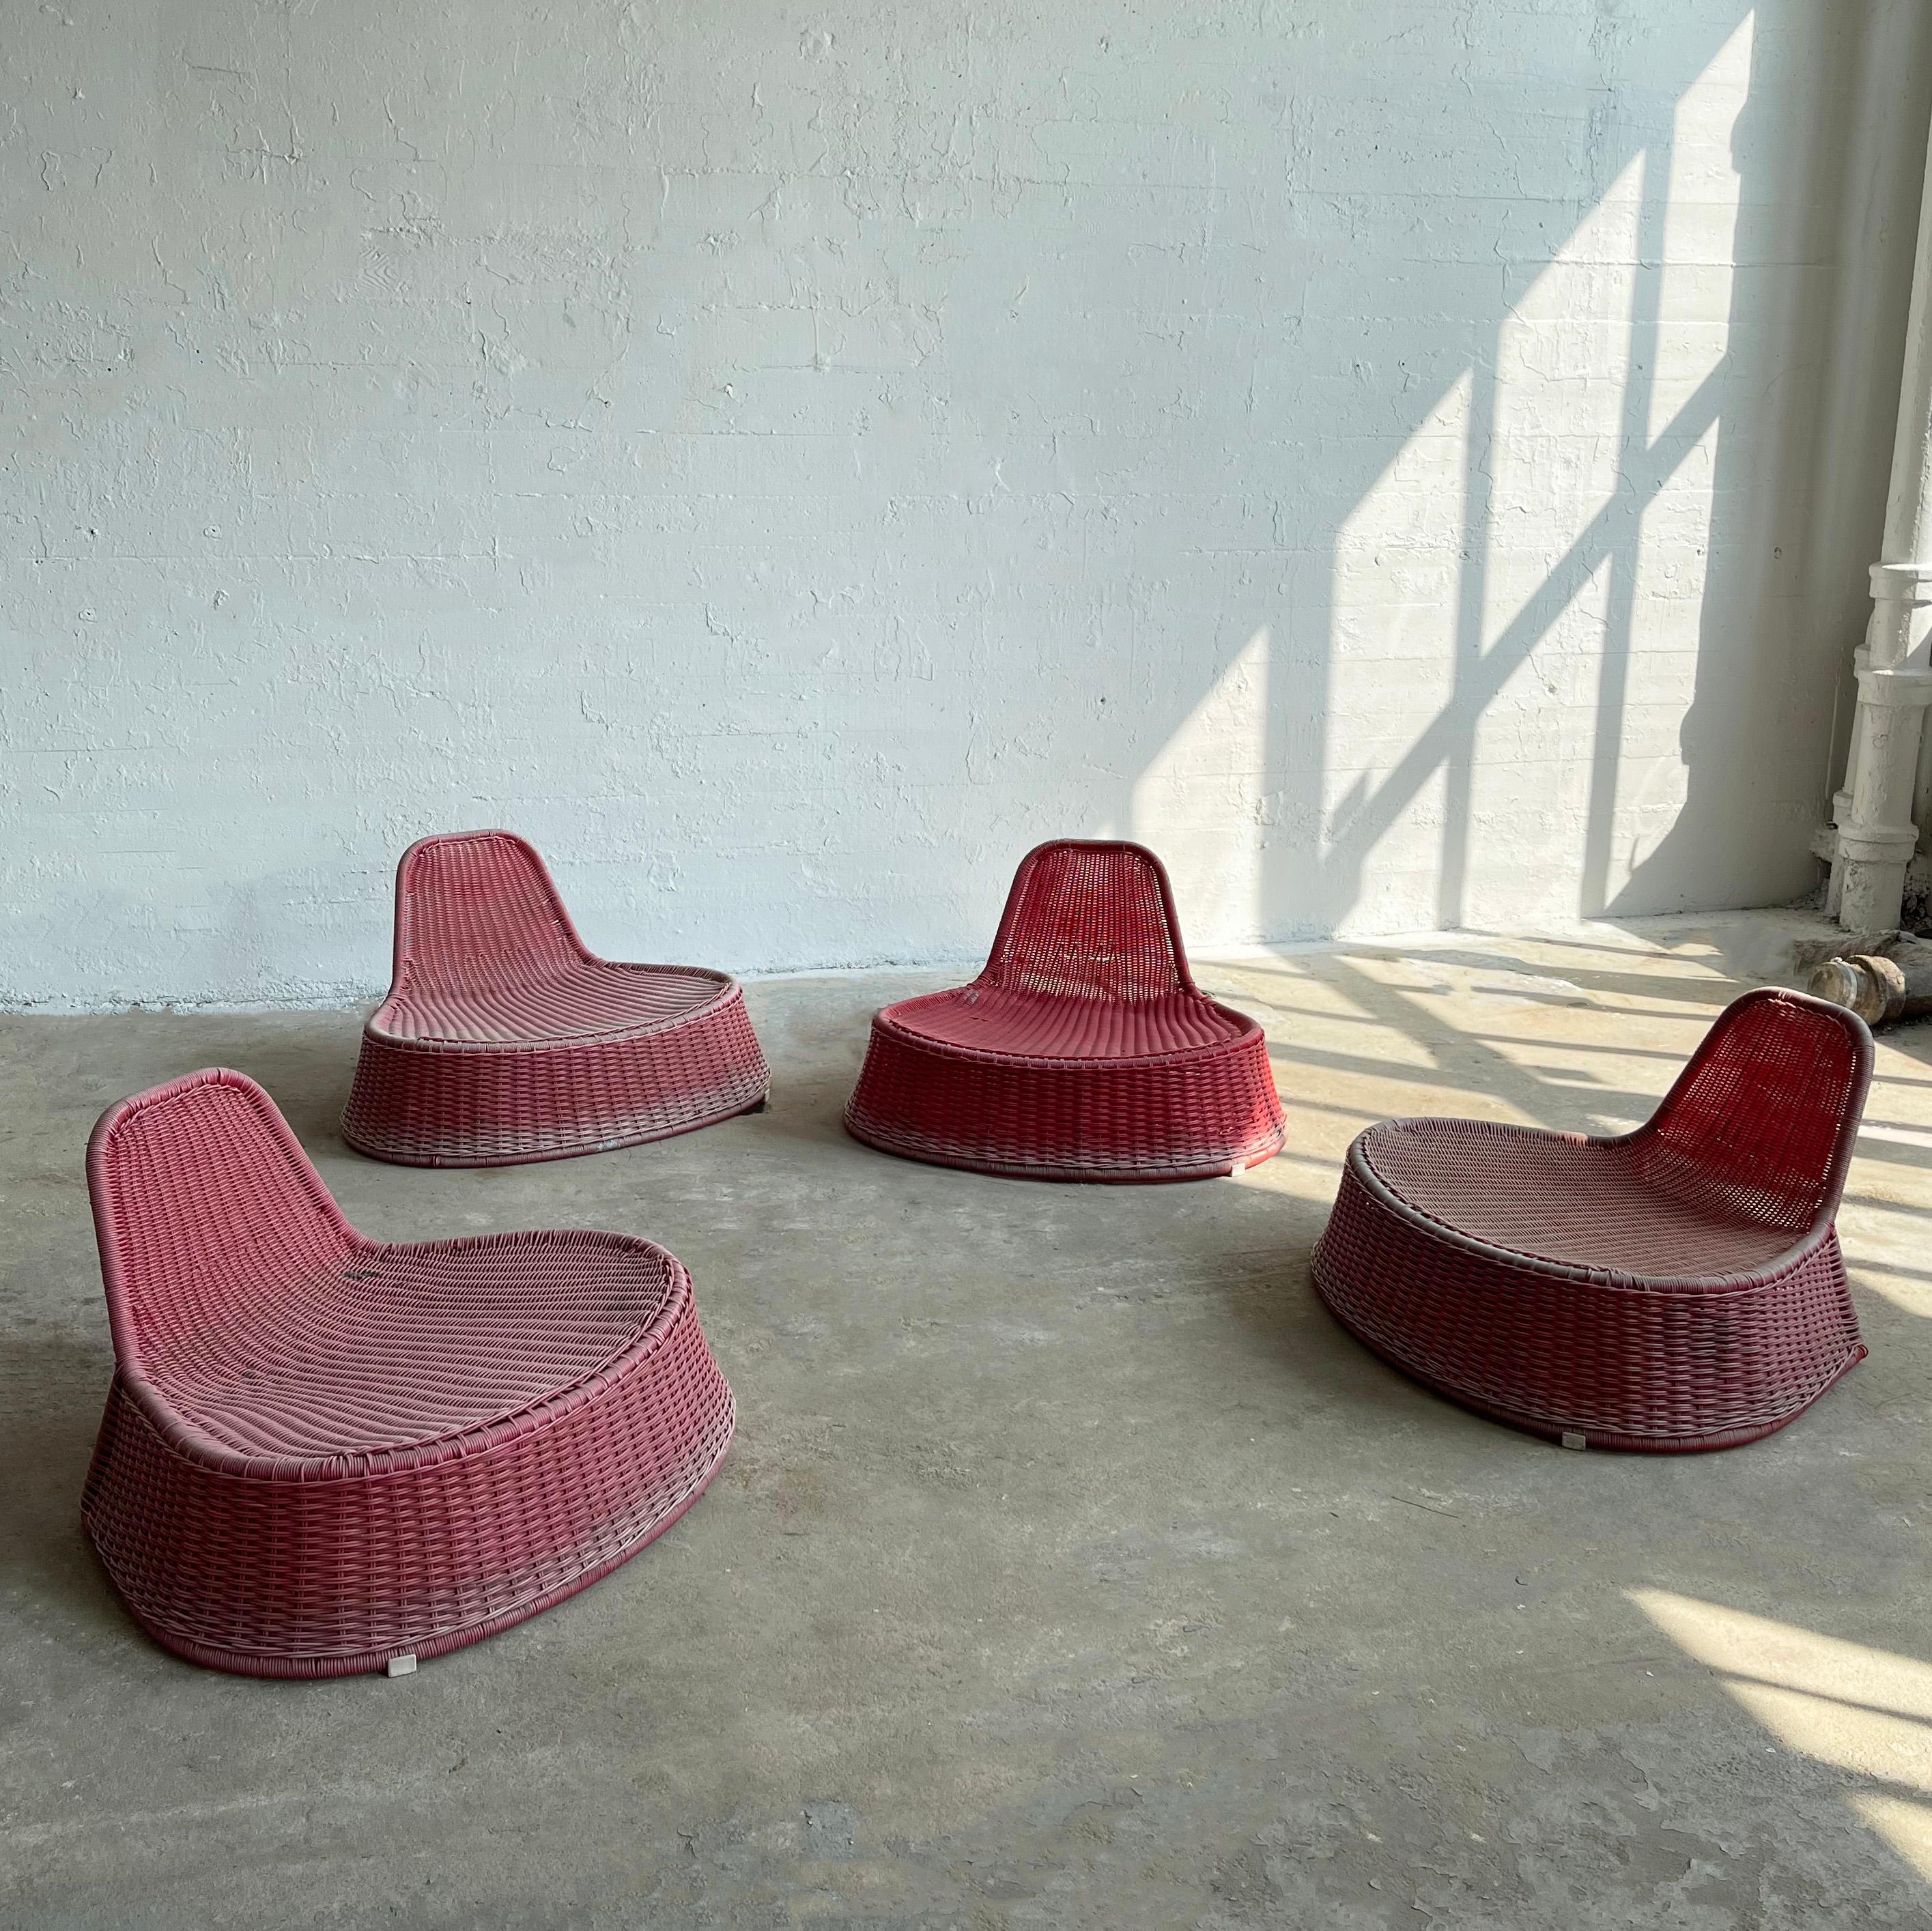 Die vier farbenfrohen, modernen Loungesessel für den Außenbereich, die die niederländische Designerin Monika Mulder um 1990 für Ikea entworfen hat, bestehen aus organischen Formen aus himbeerrotem Rattan und geflochtenem Kunststoff, die sowohl im